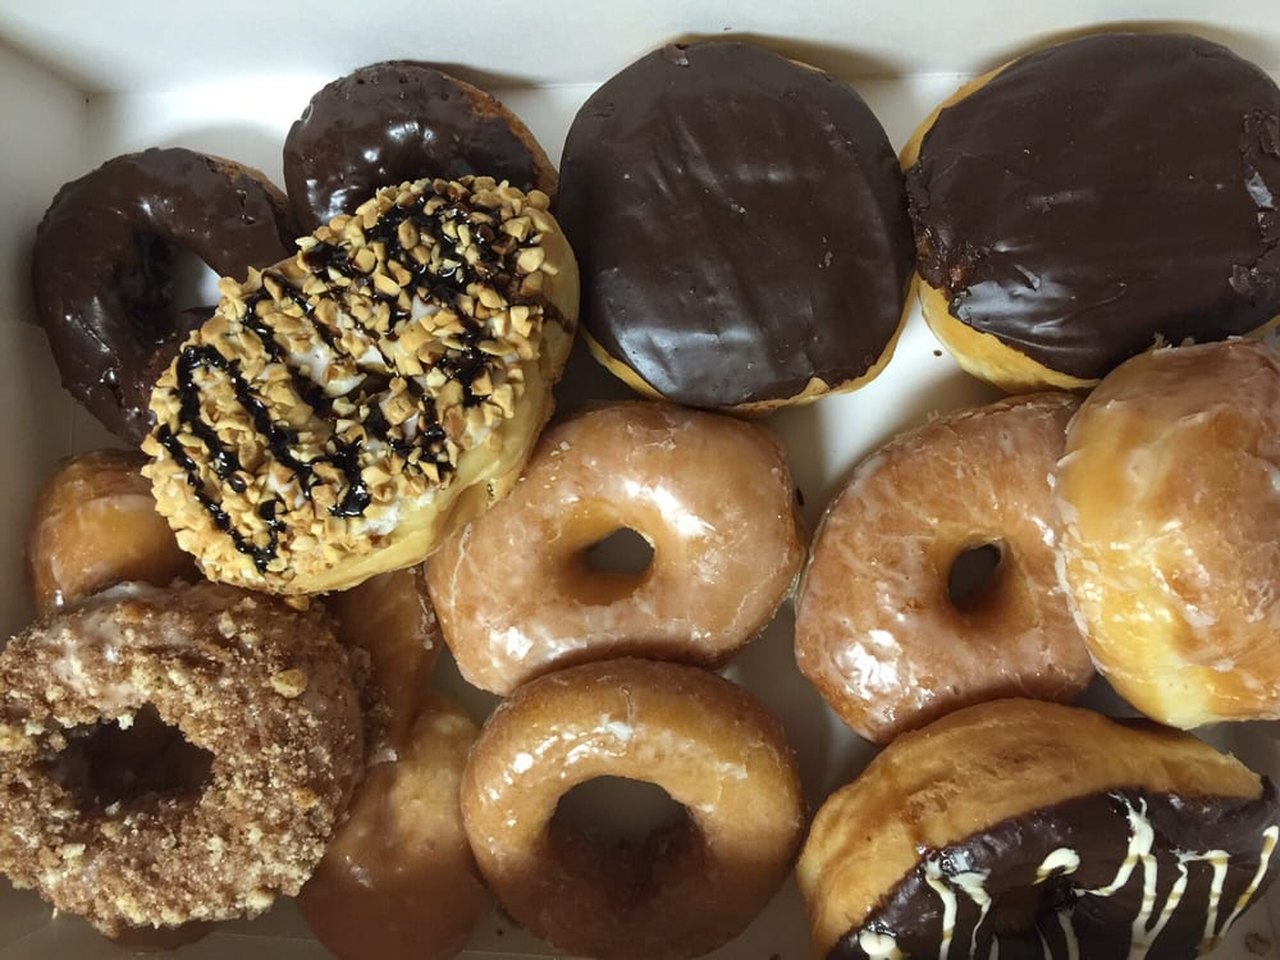 10 Best Donut Shops In St. Louis